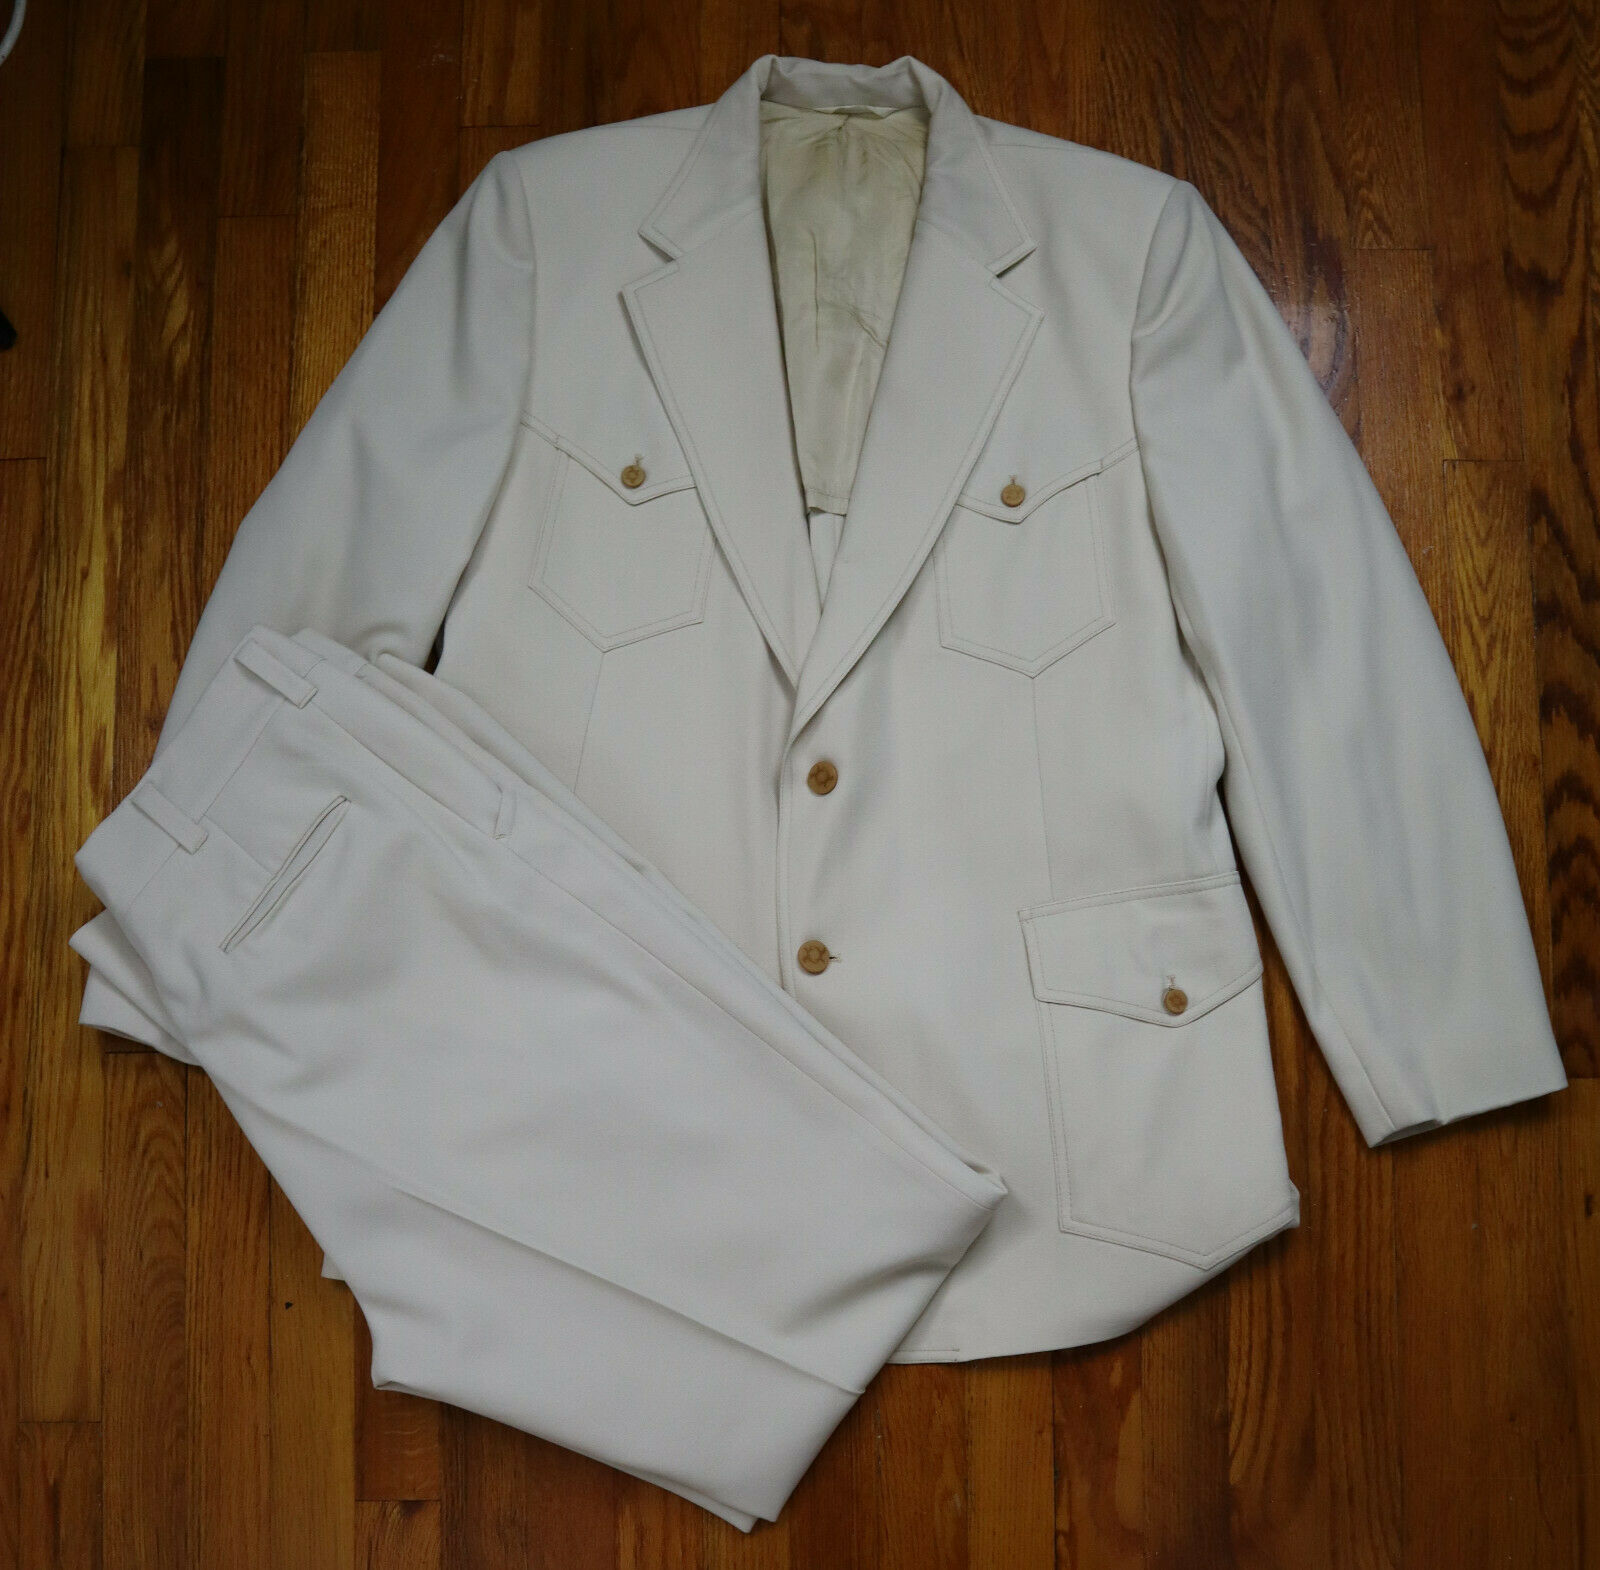 Vintage 1970s 70s Men's Beige Ivory Suit - Size 46l